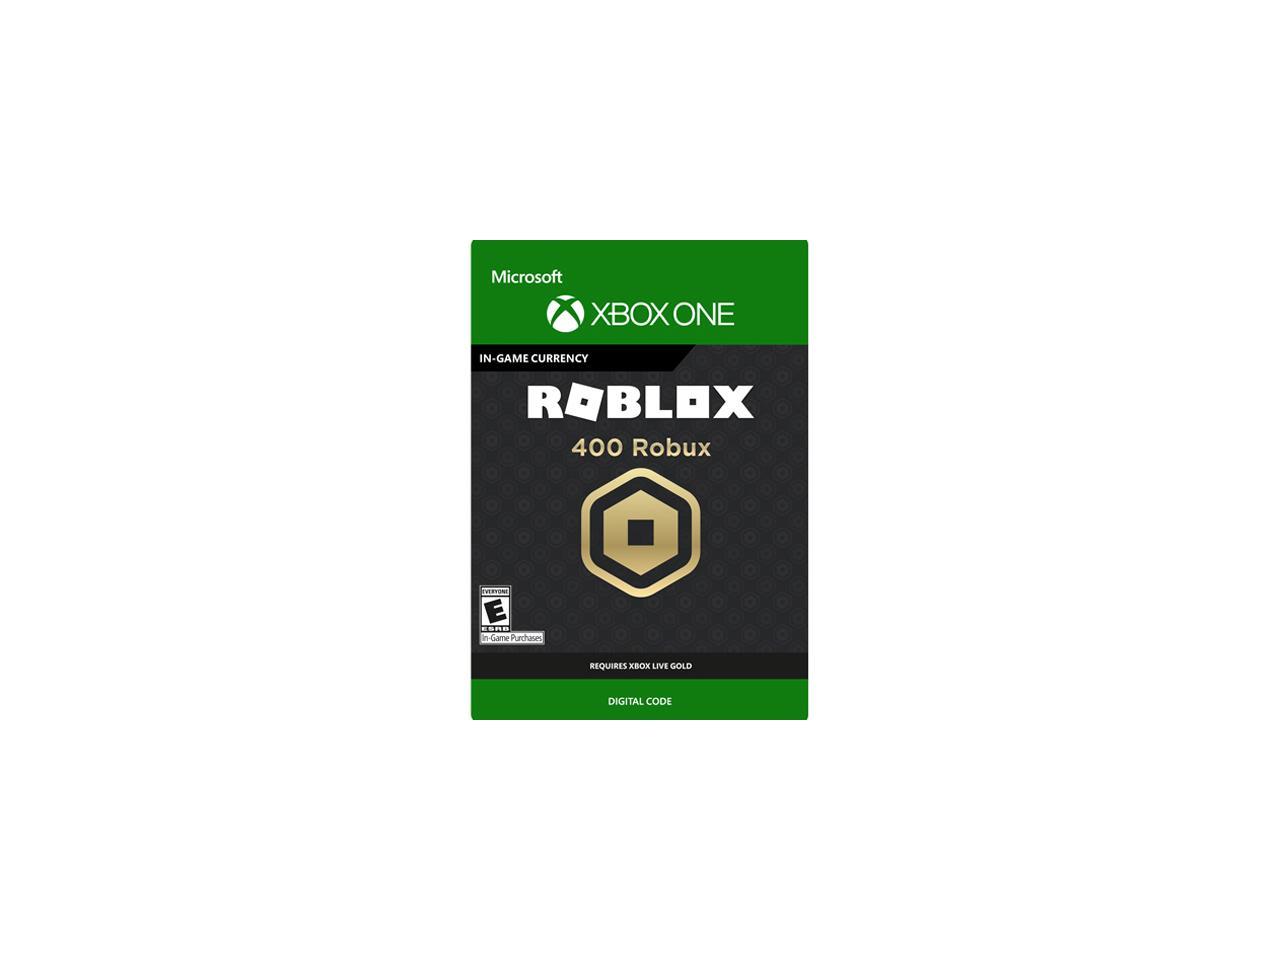 400 Robux For Xbox One Digital Code Newegg Com - 400 robux for xbox one digital code newegg com